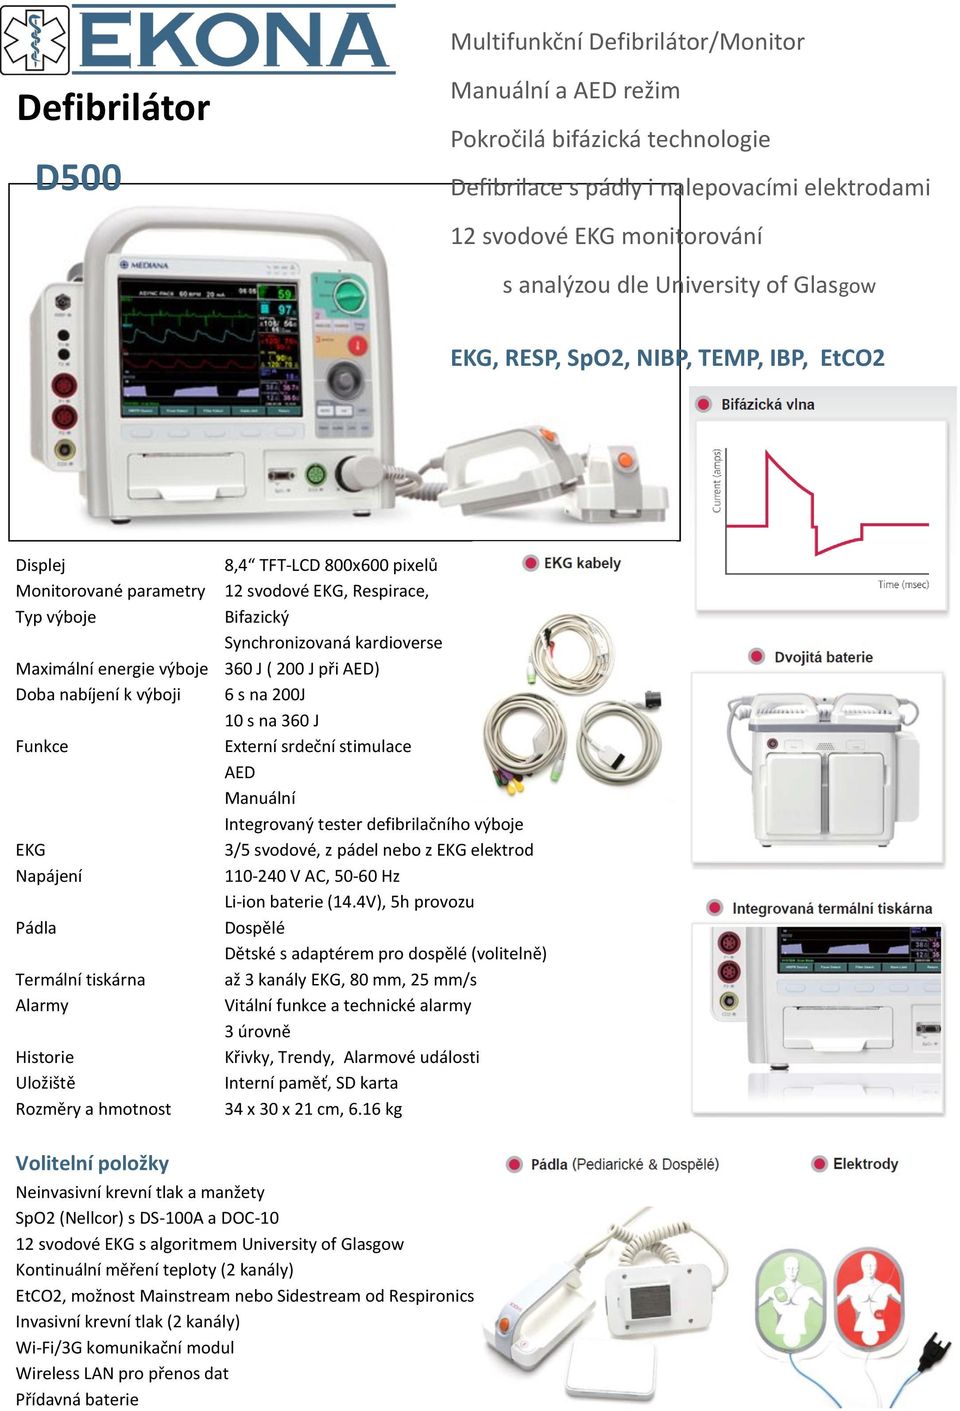 Maximální energie výboje 360 J ( 200 J při AED) Doba nabíjení k výboji 6 s na 200J 10 s na 360 J Funkce Externí srdeční stimulace AED Manuální Integrovaný tester defibrilačního výboje EKG 3/5